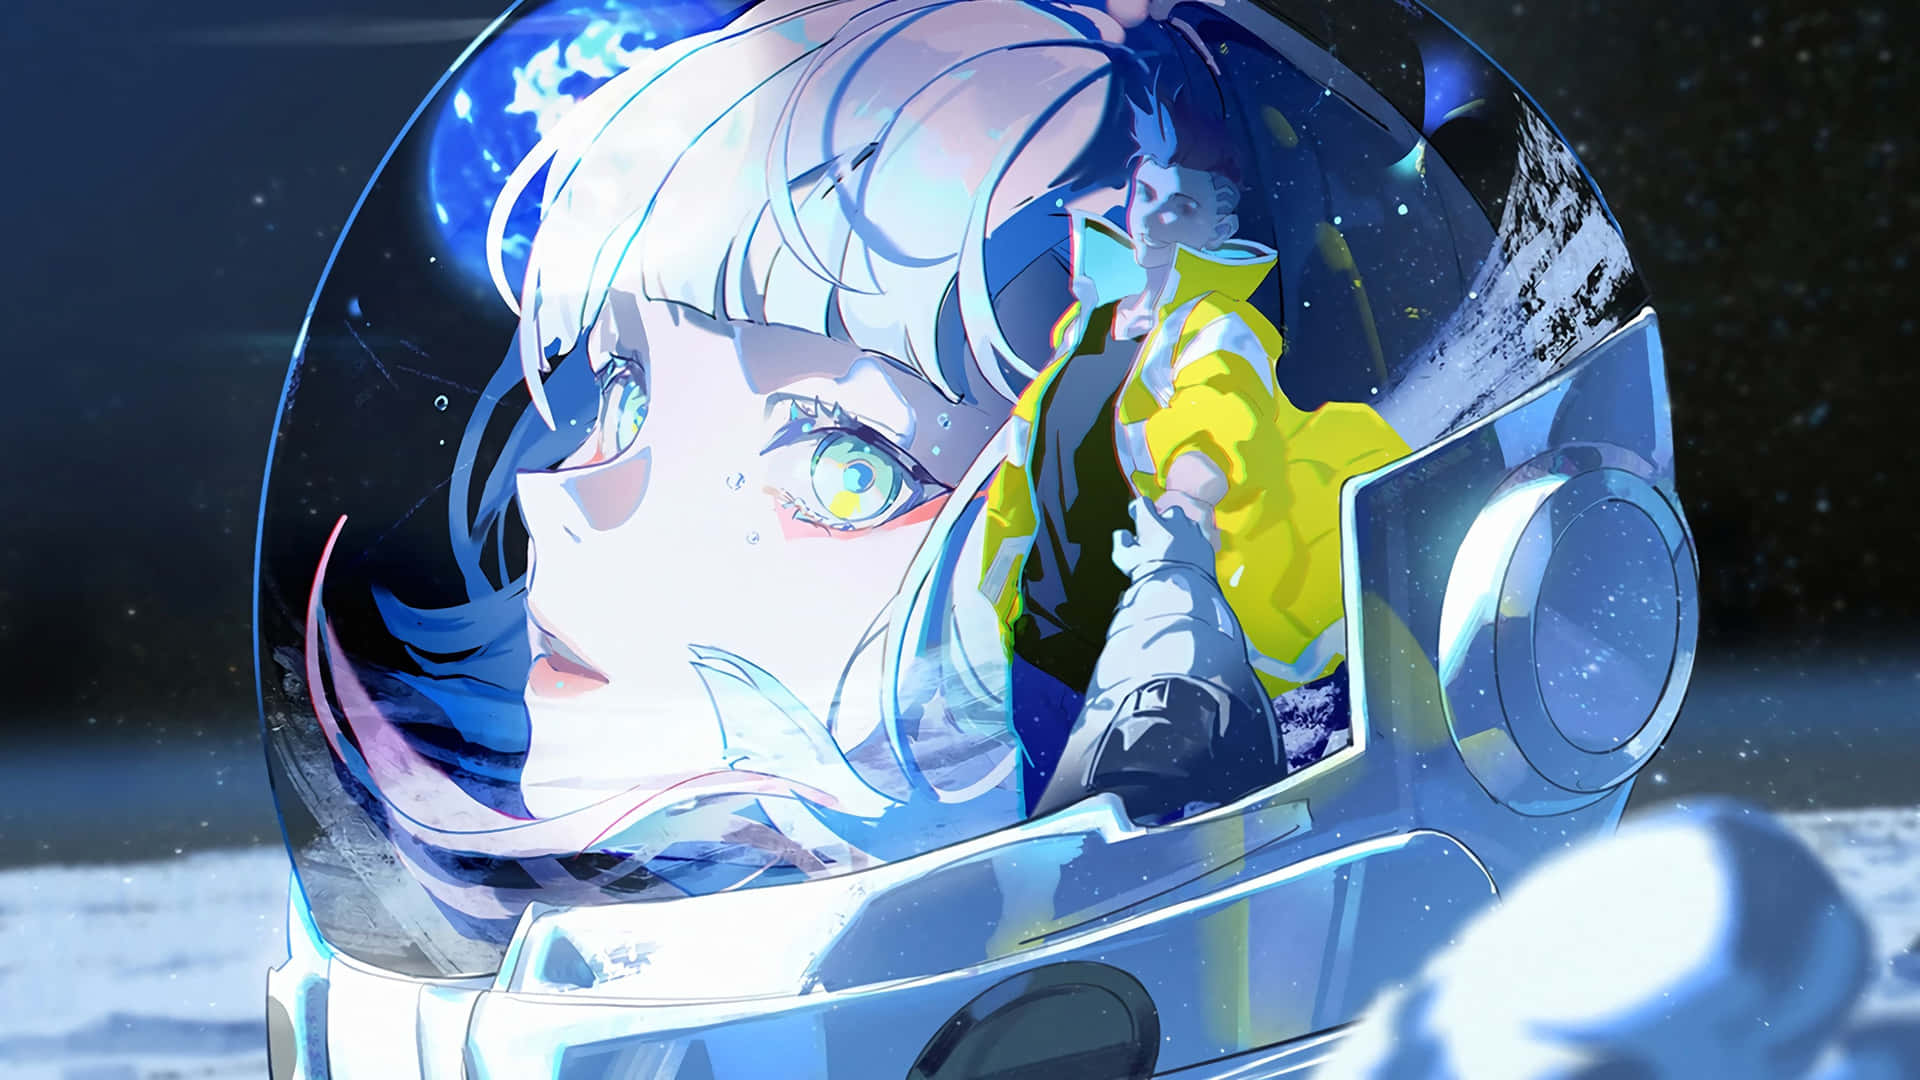 Cyberpunk Astronaut Anime Girl Wallpaper